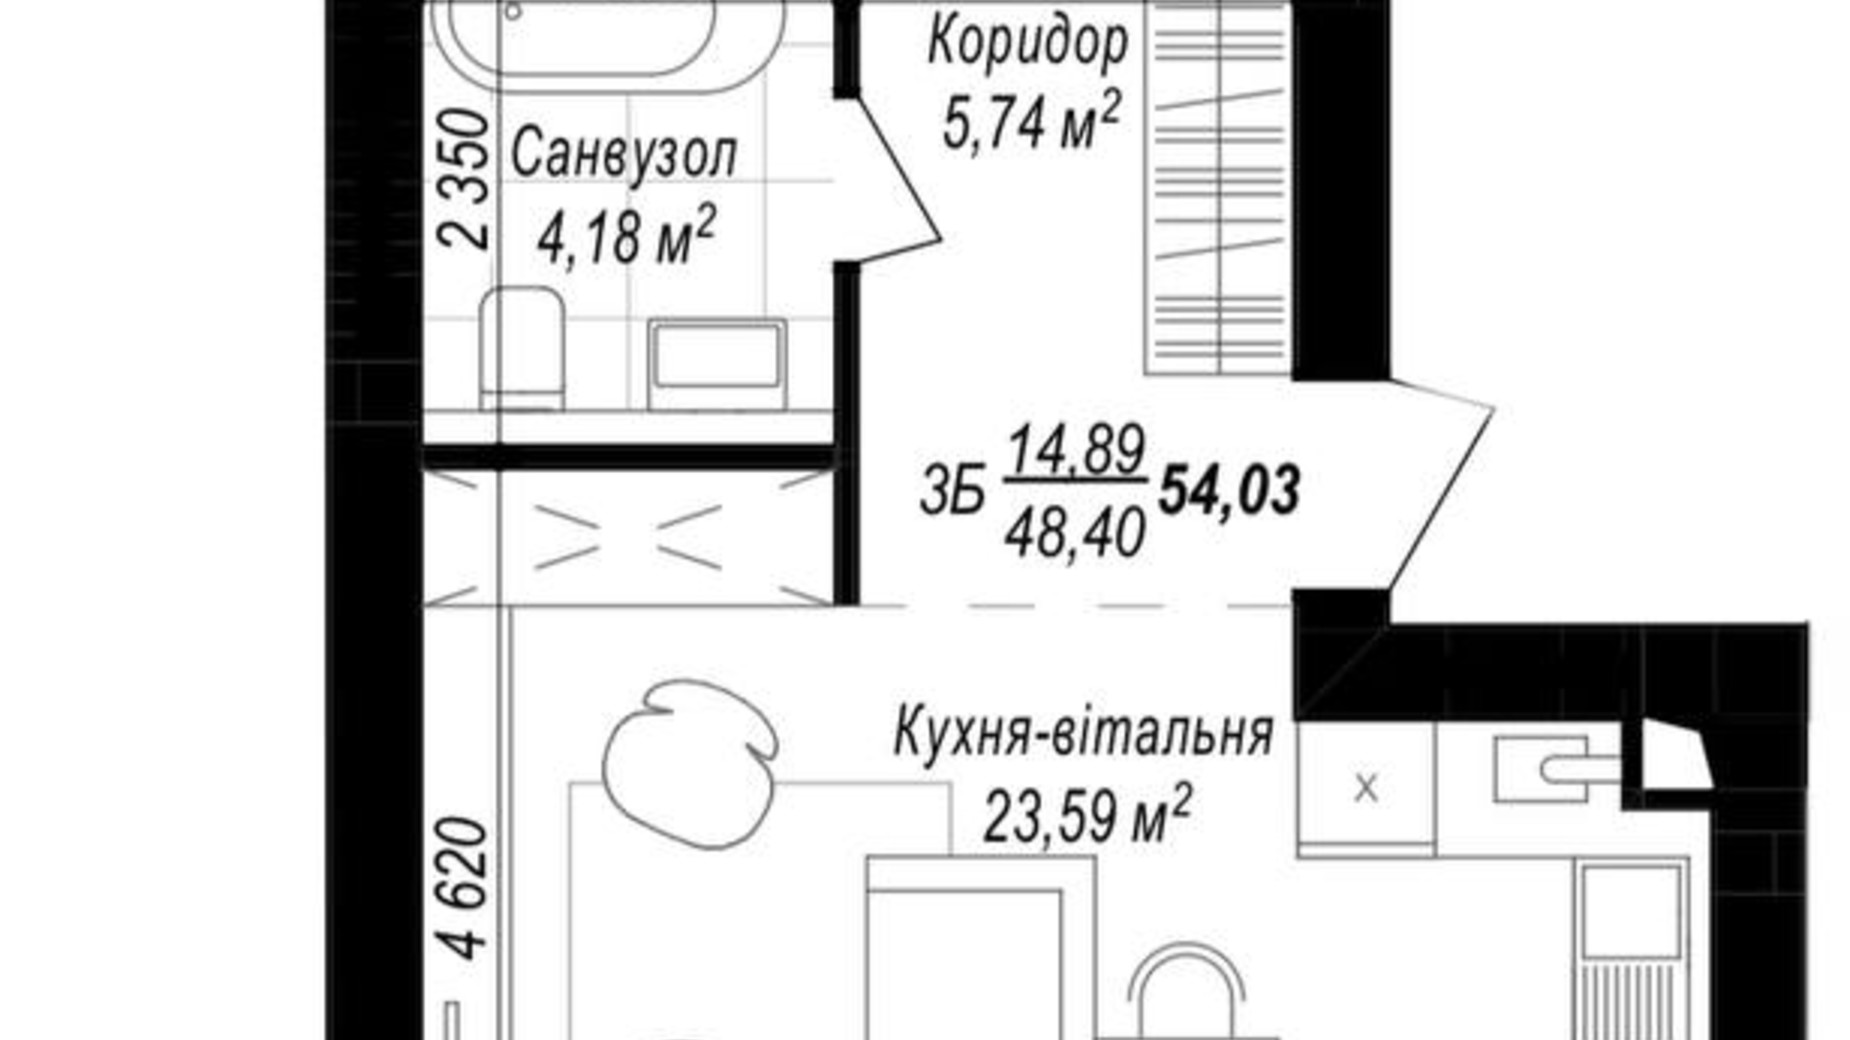 Планировка 1-комнатной квартиры в ЖК Smart & Green 54.03 м², фото 589310